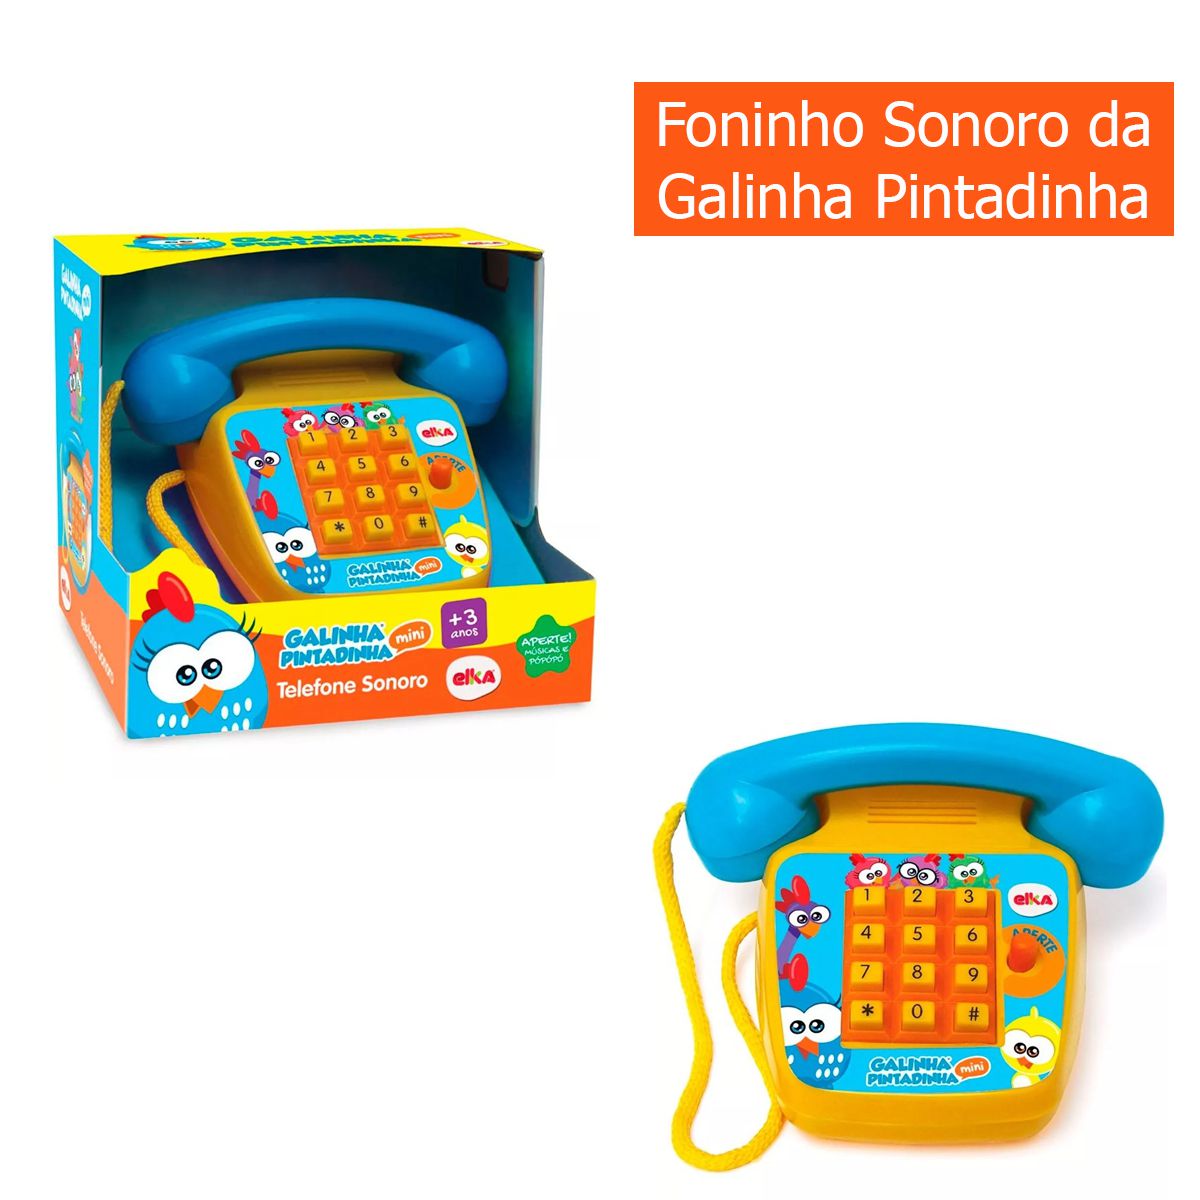 Bonecos e Bonecas - Galinha Pintadinha Mini Musical - Elka - Loja